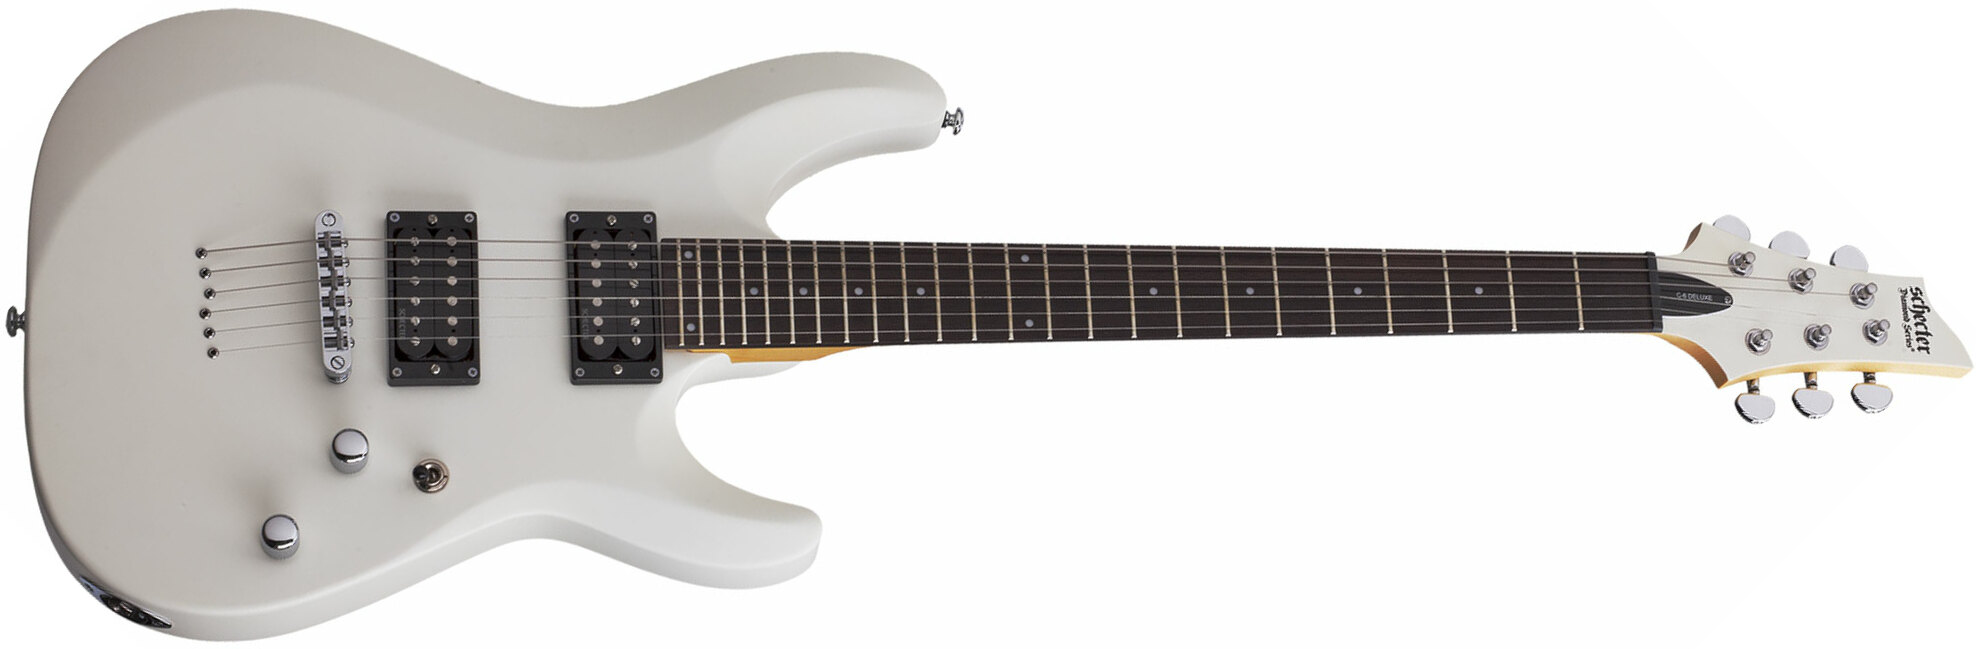 Schecter C-6 Deluxe 2h Ht Rw - Satin White - Double Cut E-Gitarre - Main picture